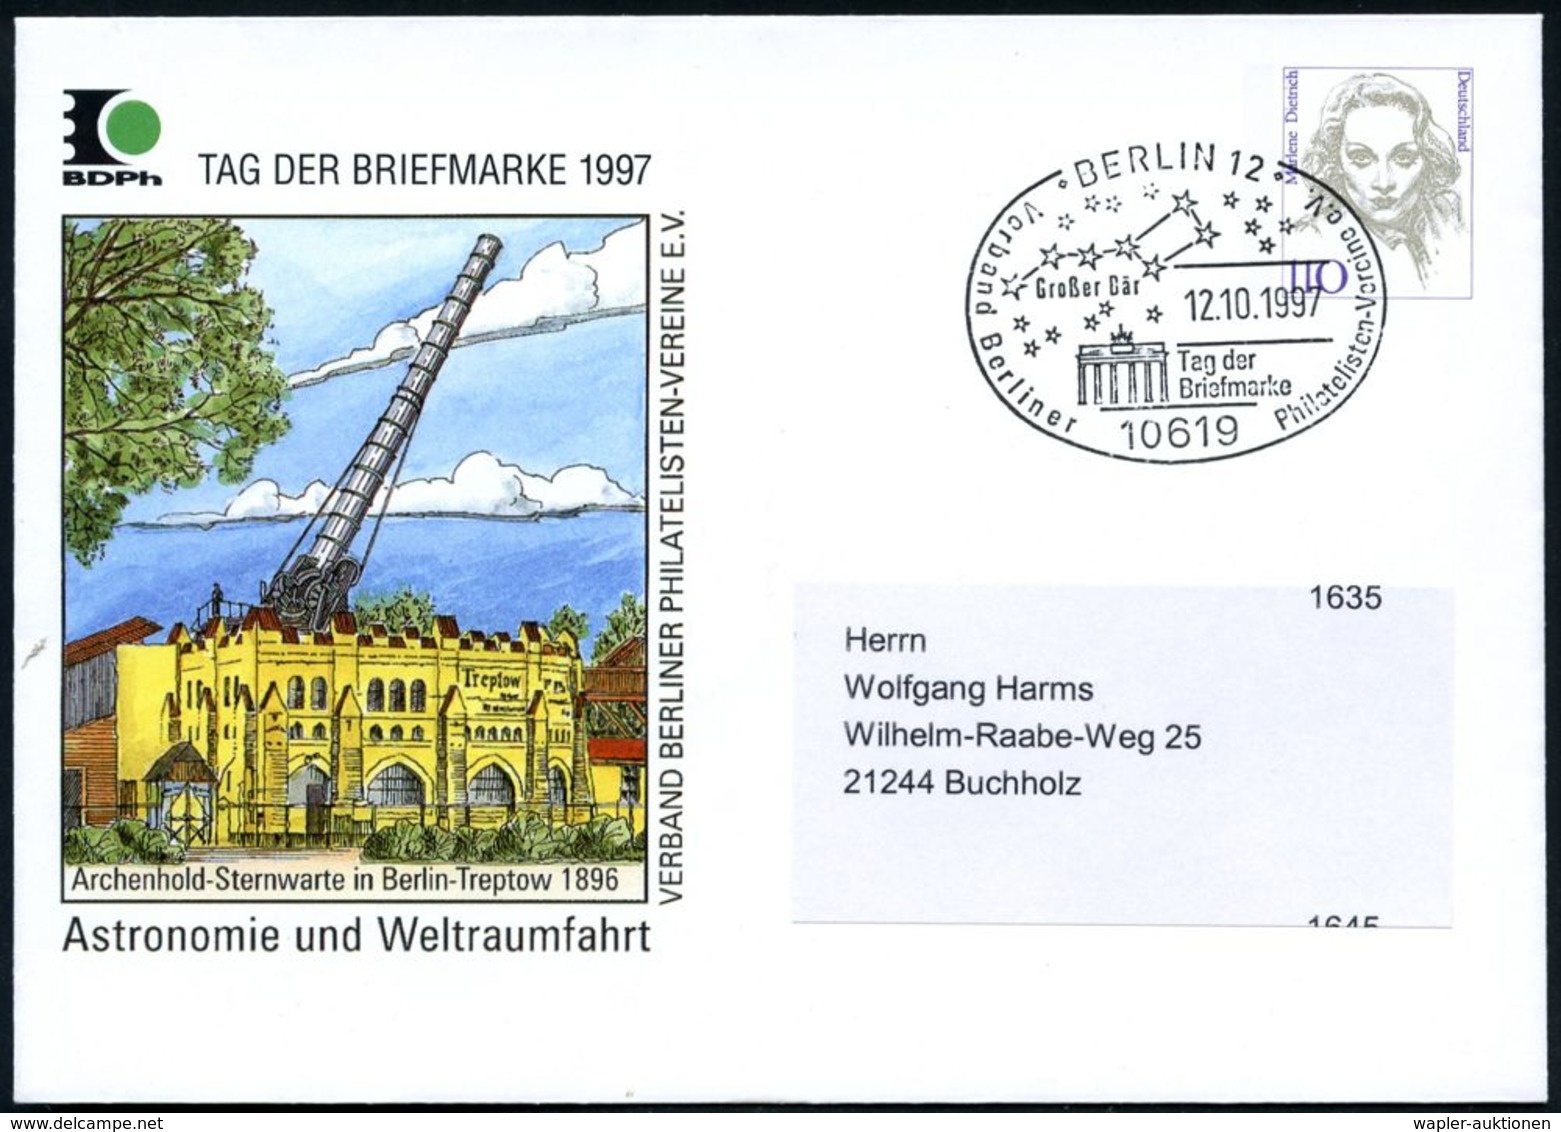 10619 BERLIN 12/ Großer Bär/ Tag Der/ Briefmarke.. 1997 (12.10.) SSt = Sternbild "Gr. Bär" (Gr. Wagen) U. Branden-bg. To - Sterrenkunde